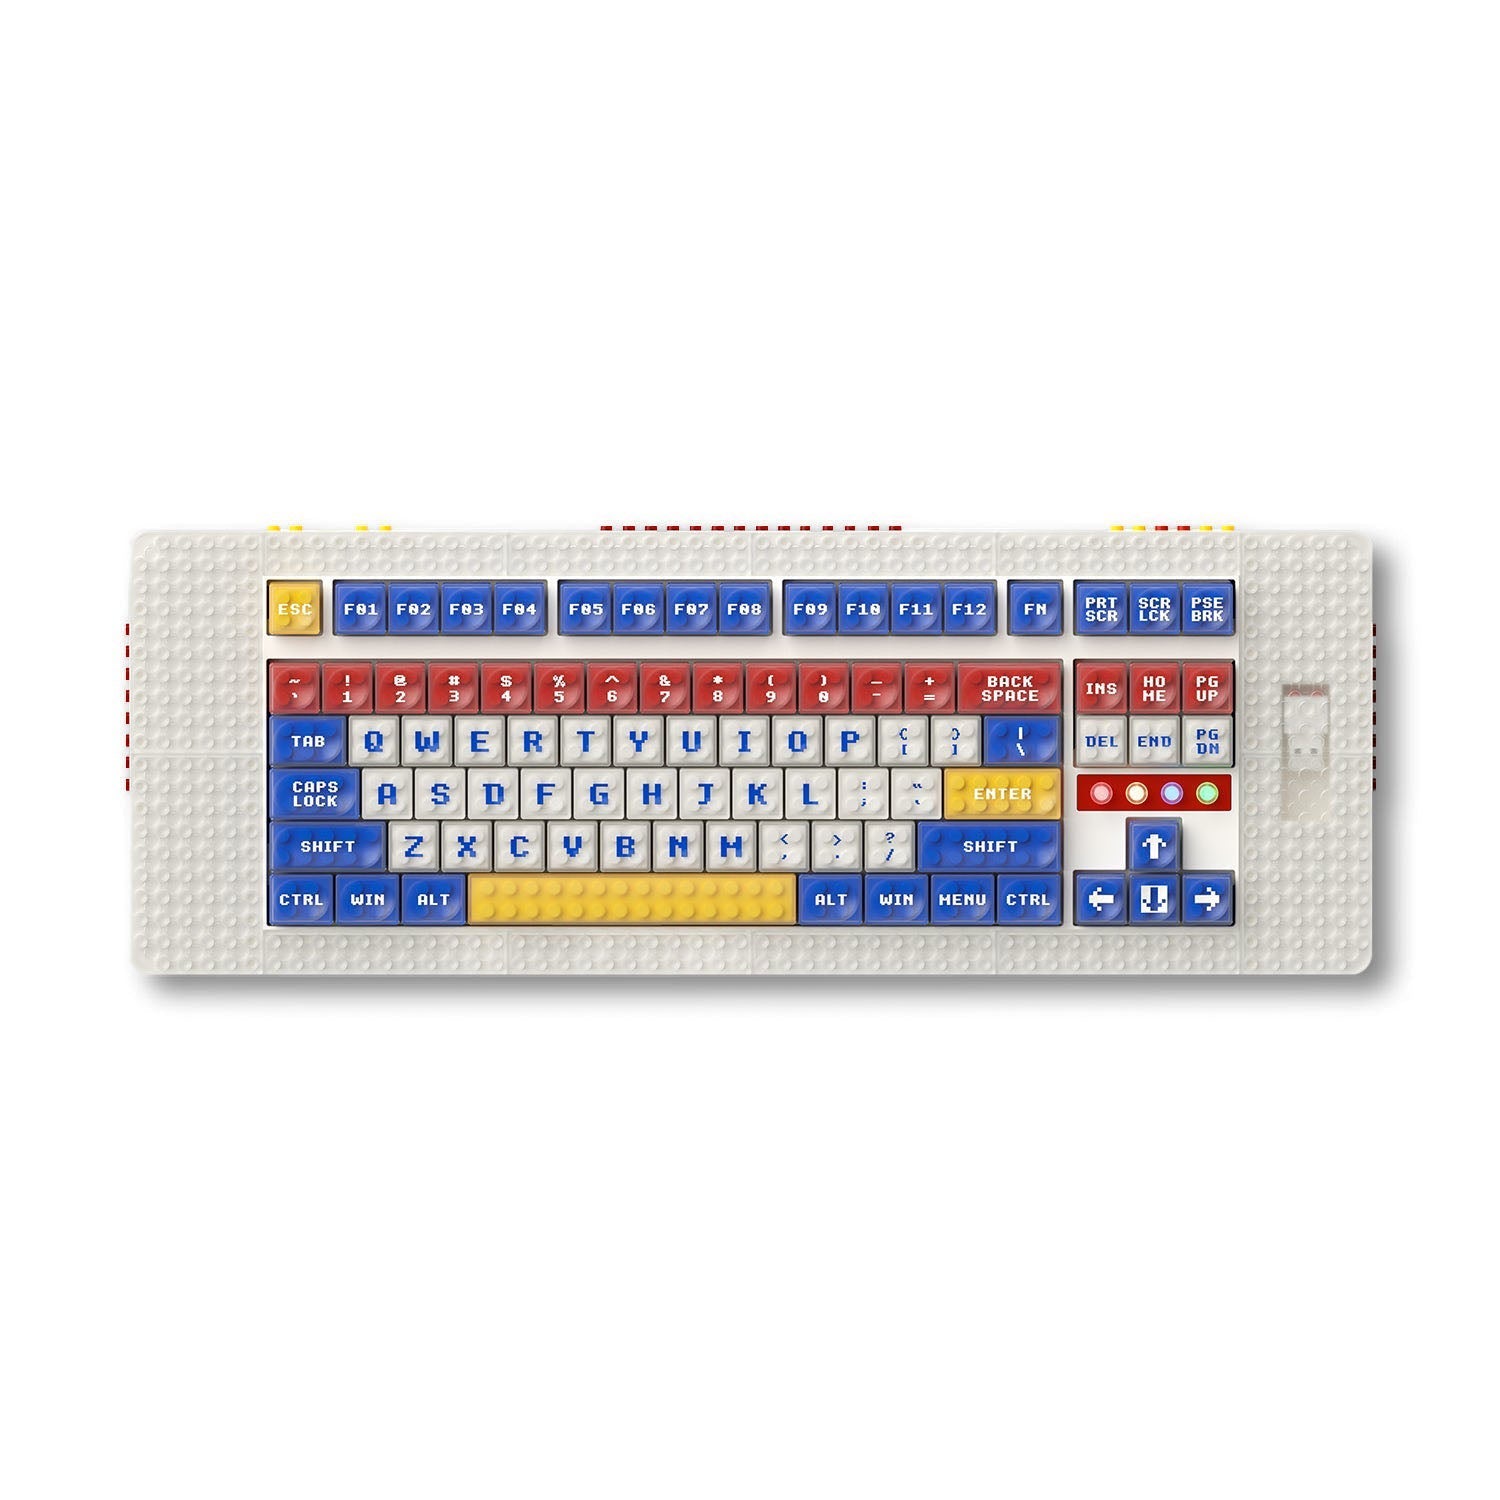 MelGeek Pixel, die weltweit erste Brick-kompatible mechanische Tastatur